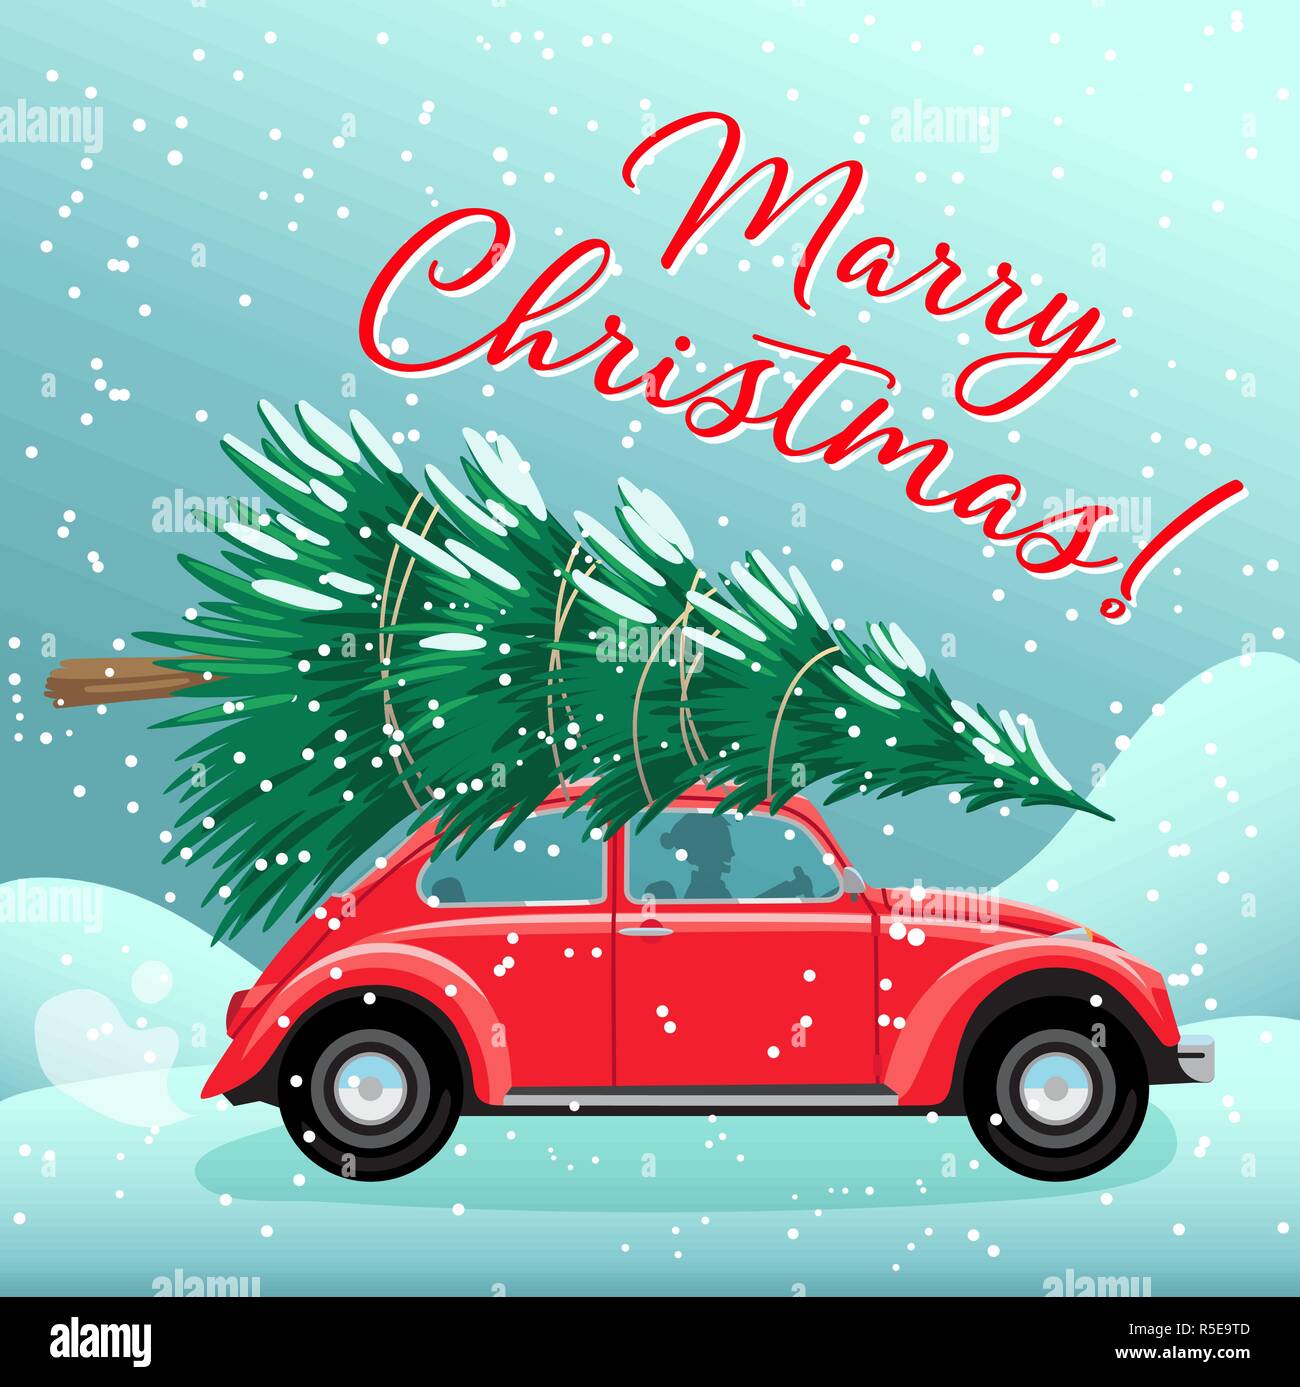 Frohe Weihnachten und guten Rutsch ins Neue Jahr Postkarte oder Poster oder Flyer Vorlage mit rot Retro auto Weihnachtsbaum auf dem Dach. Vintage styled Vector Illustration Stock Vektor